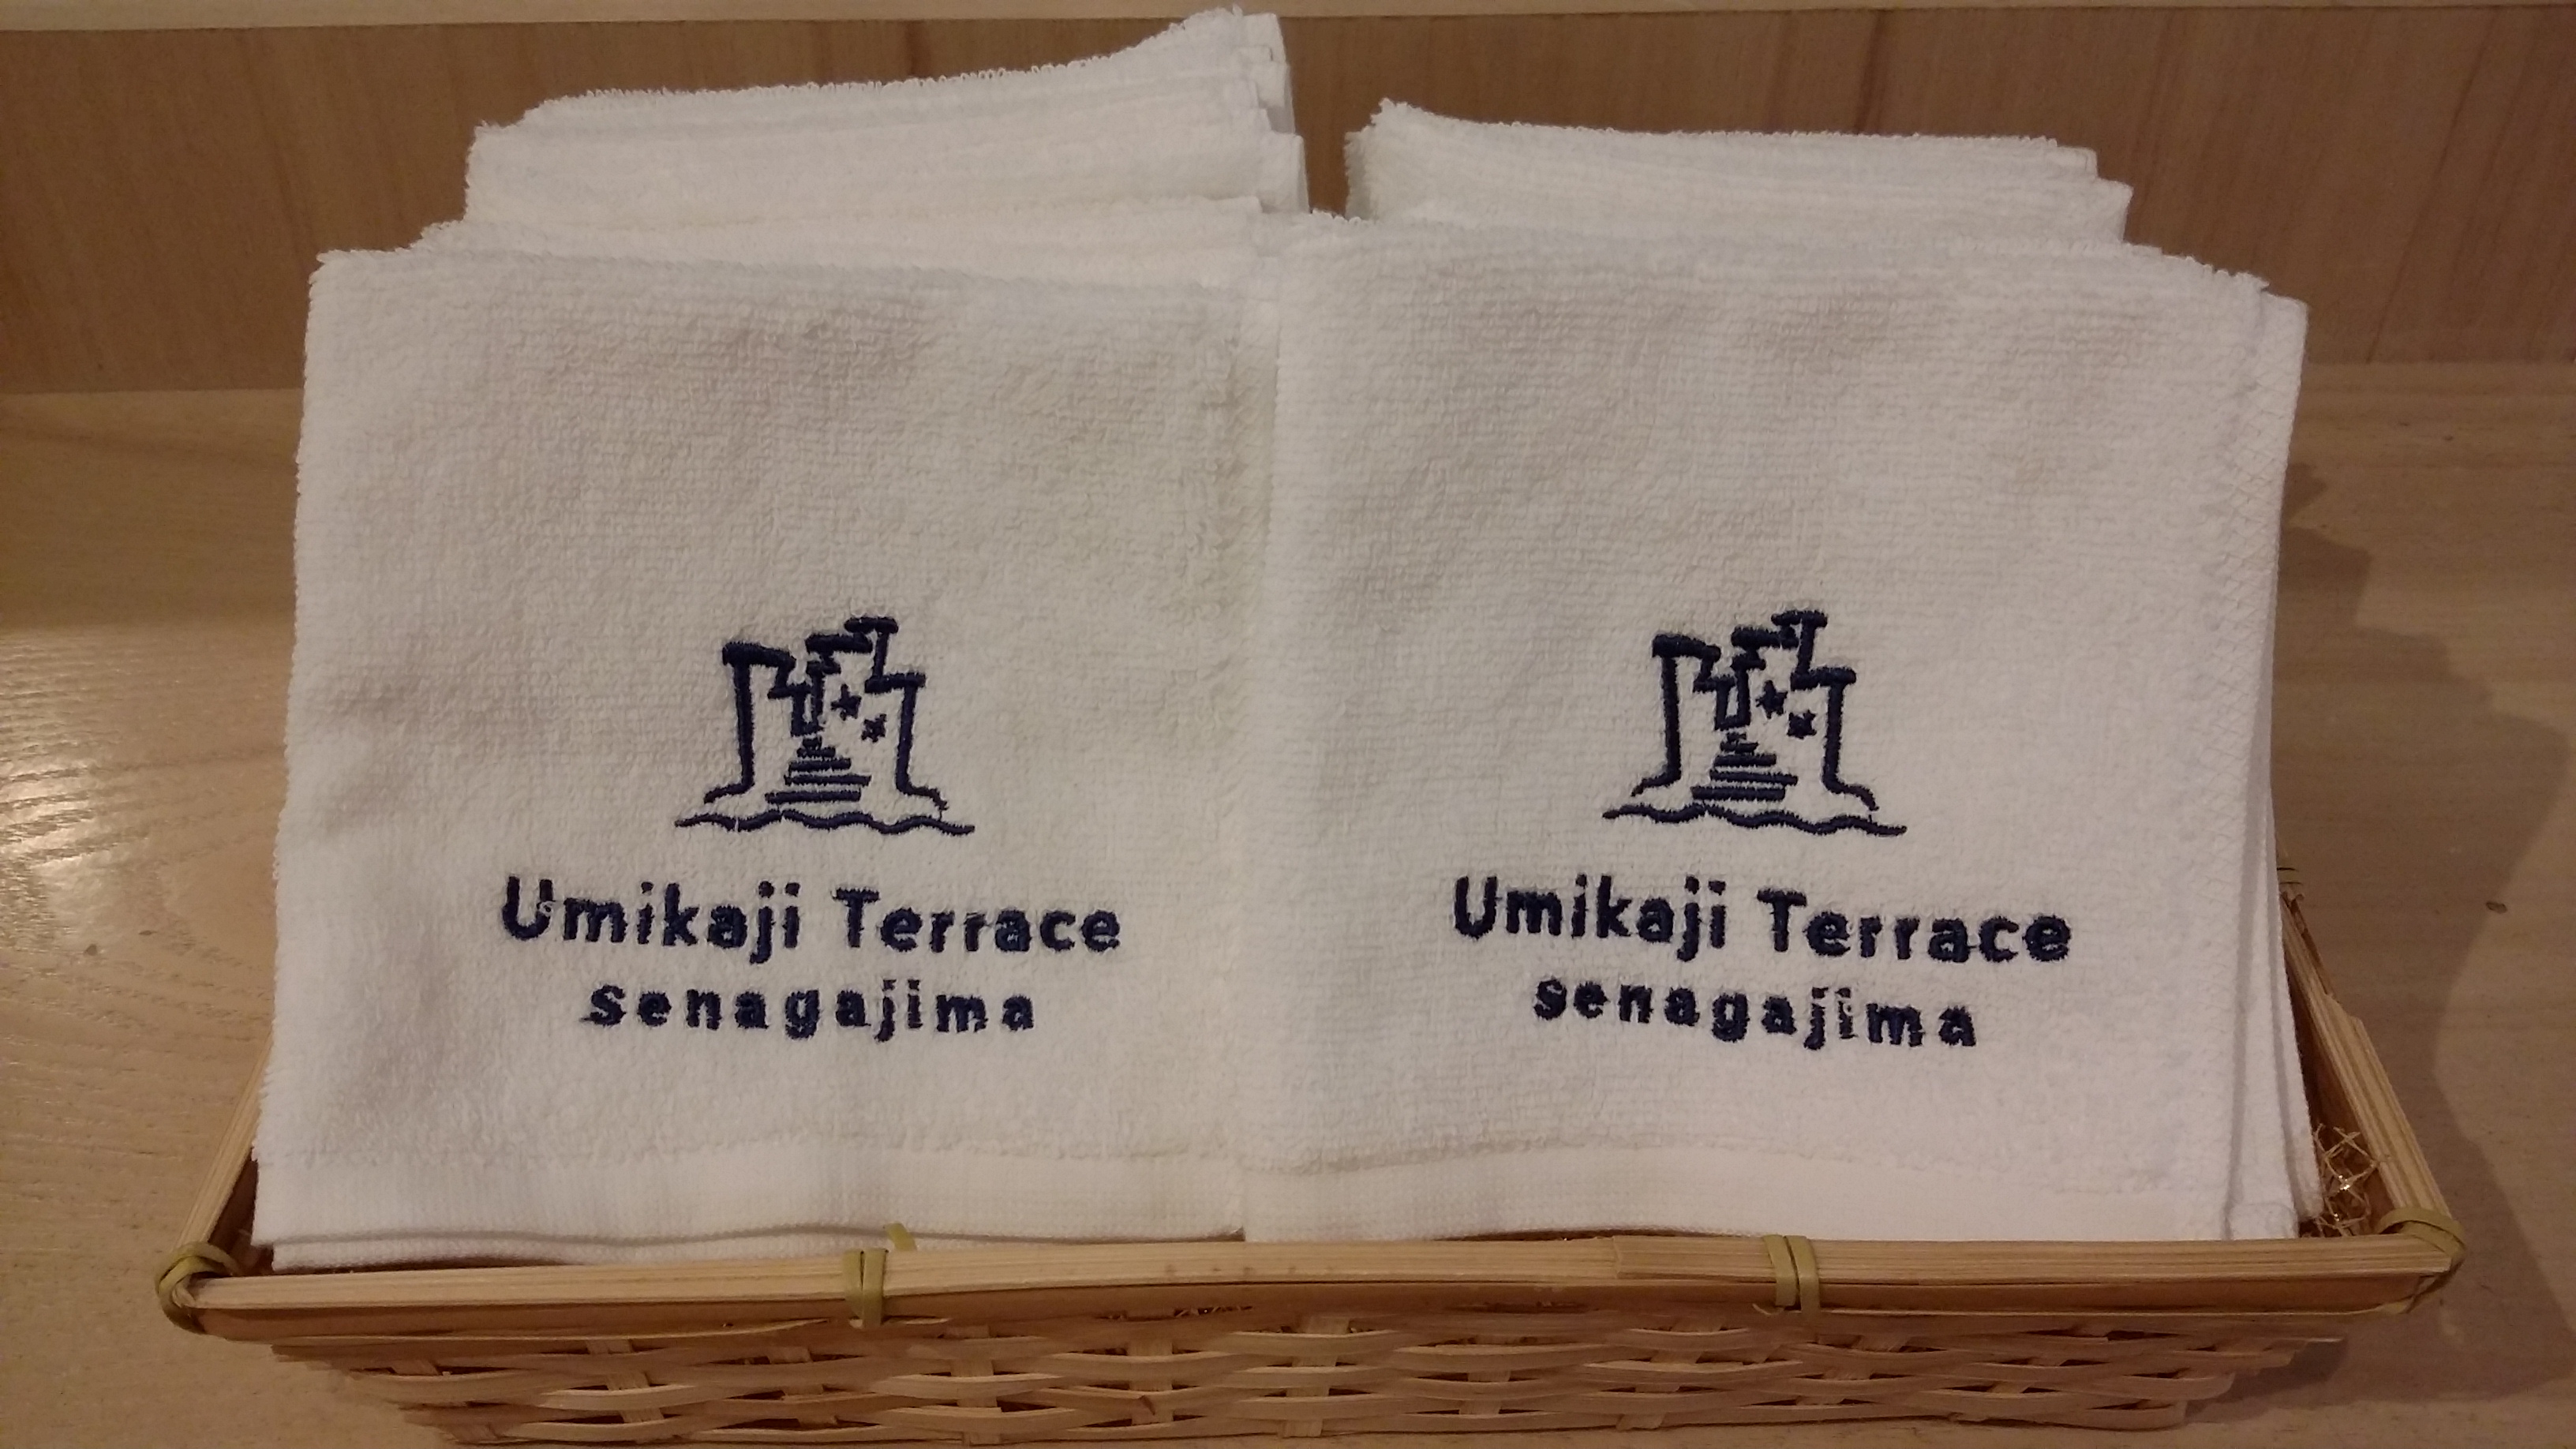 刺繍がカワイイ Umikajiterraceオリジナルハンドタオルがひとまわり大きくなって発売中 瀬長島ウミカジテラス 公式